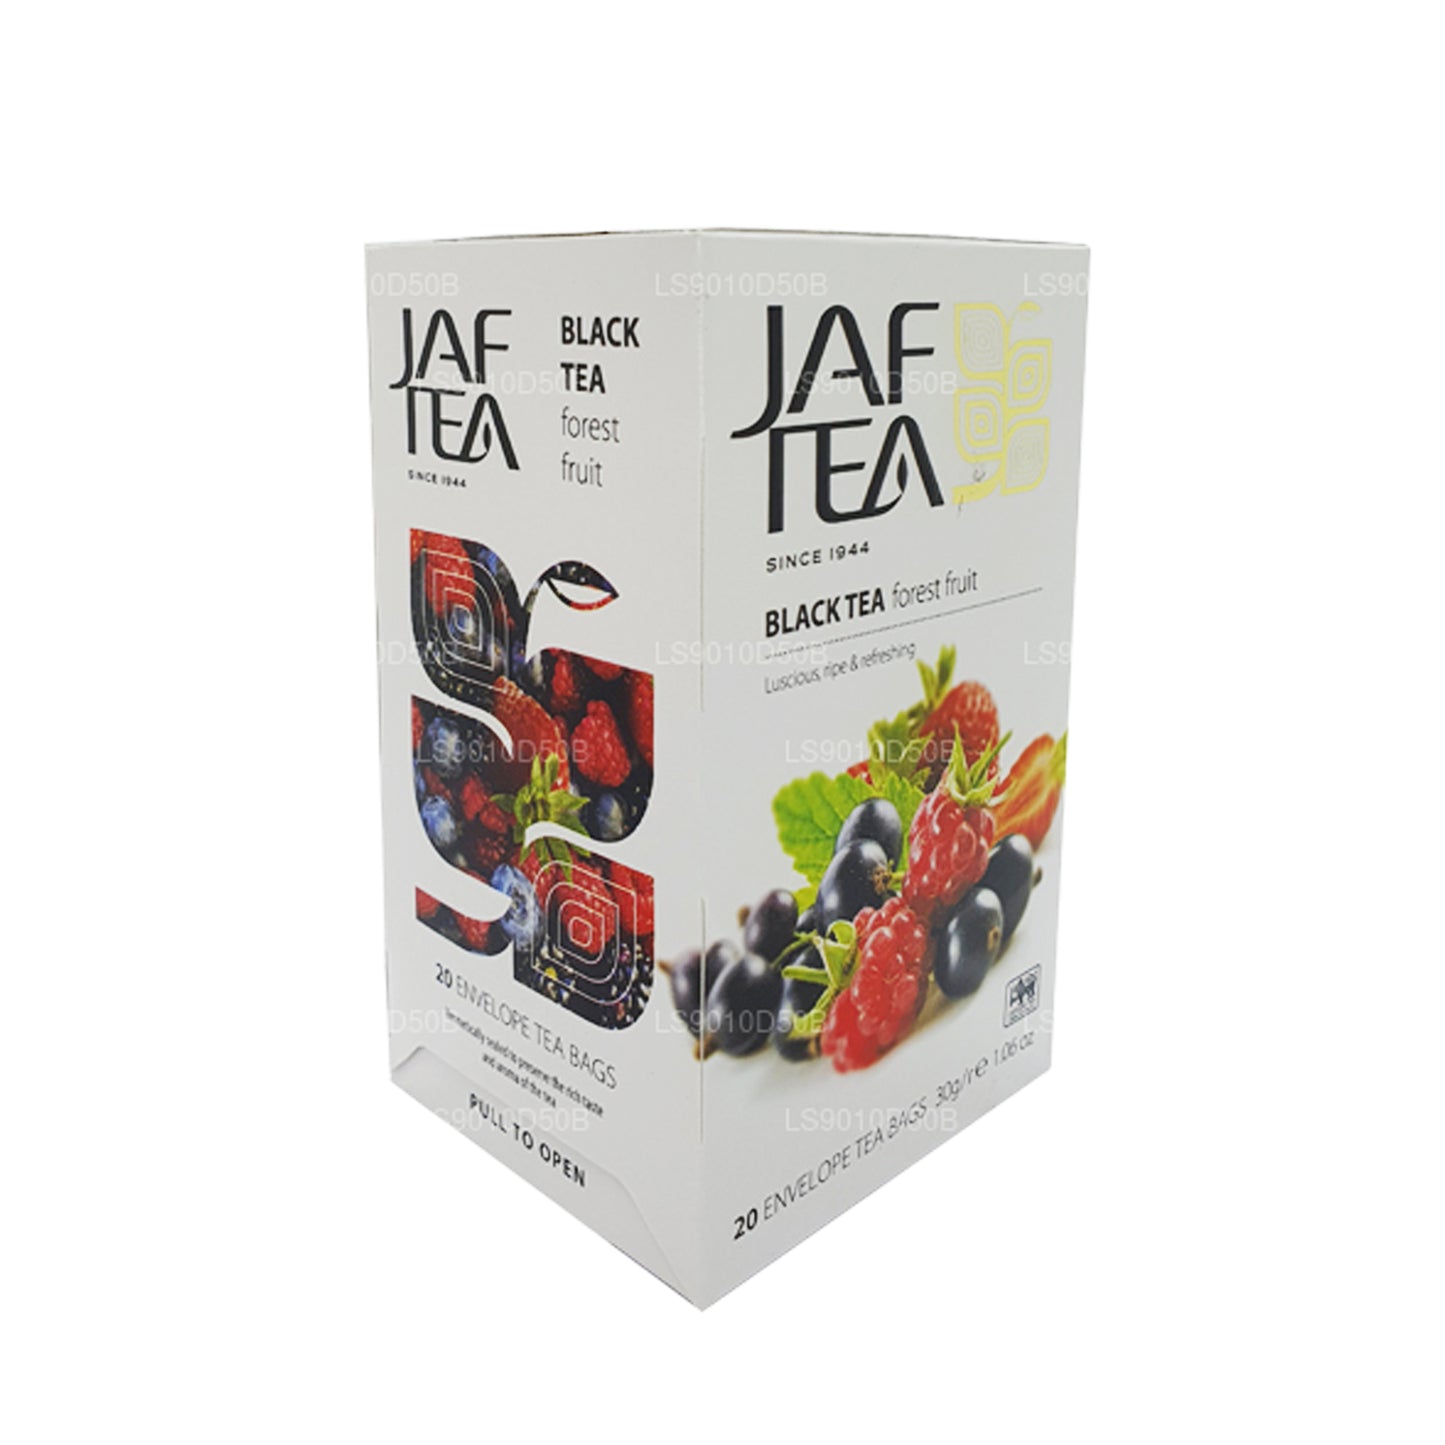 Jaf Tea Pure Fruits Collection Thé noir et fruits de la forêt (30 g) 20 sachets de thé